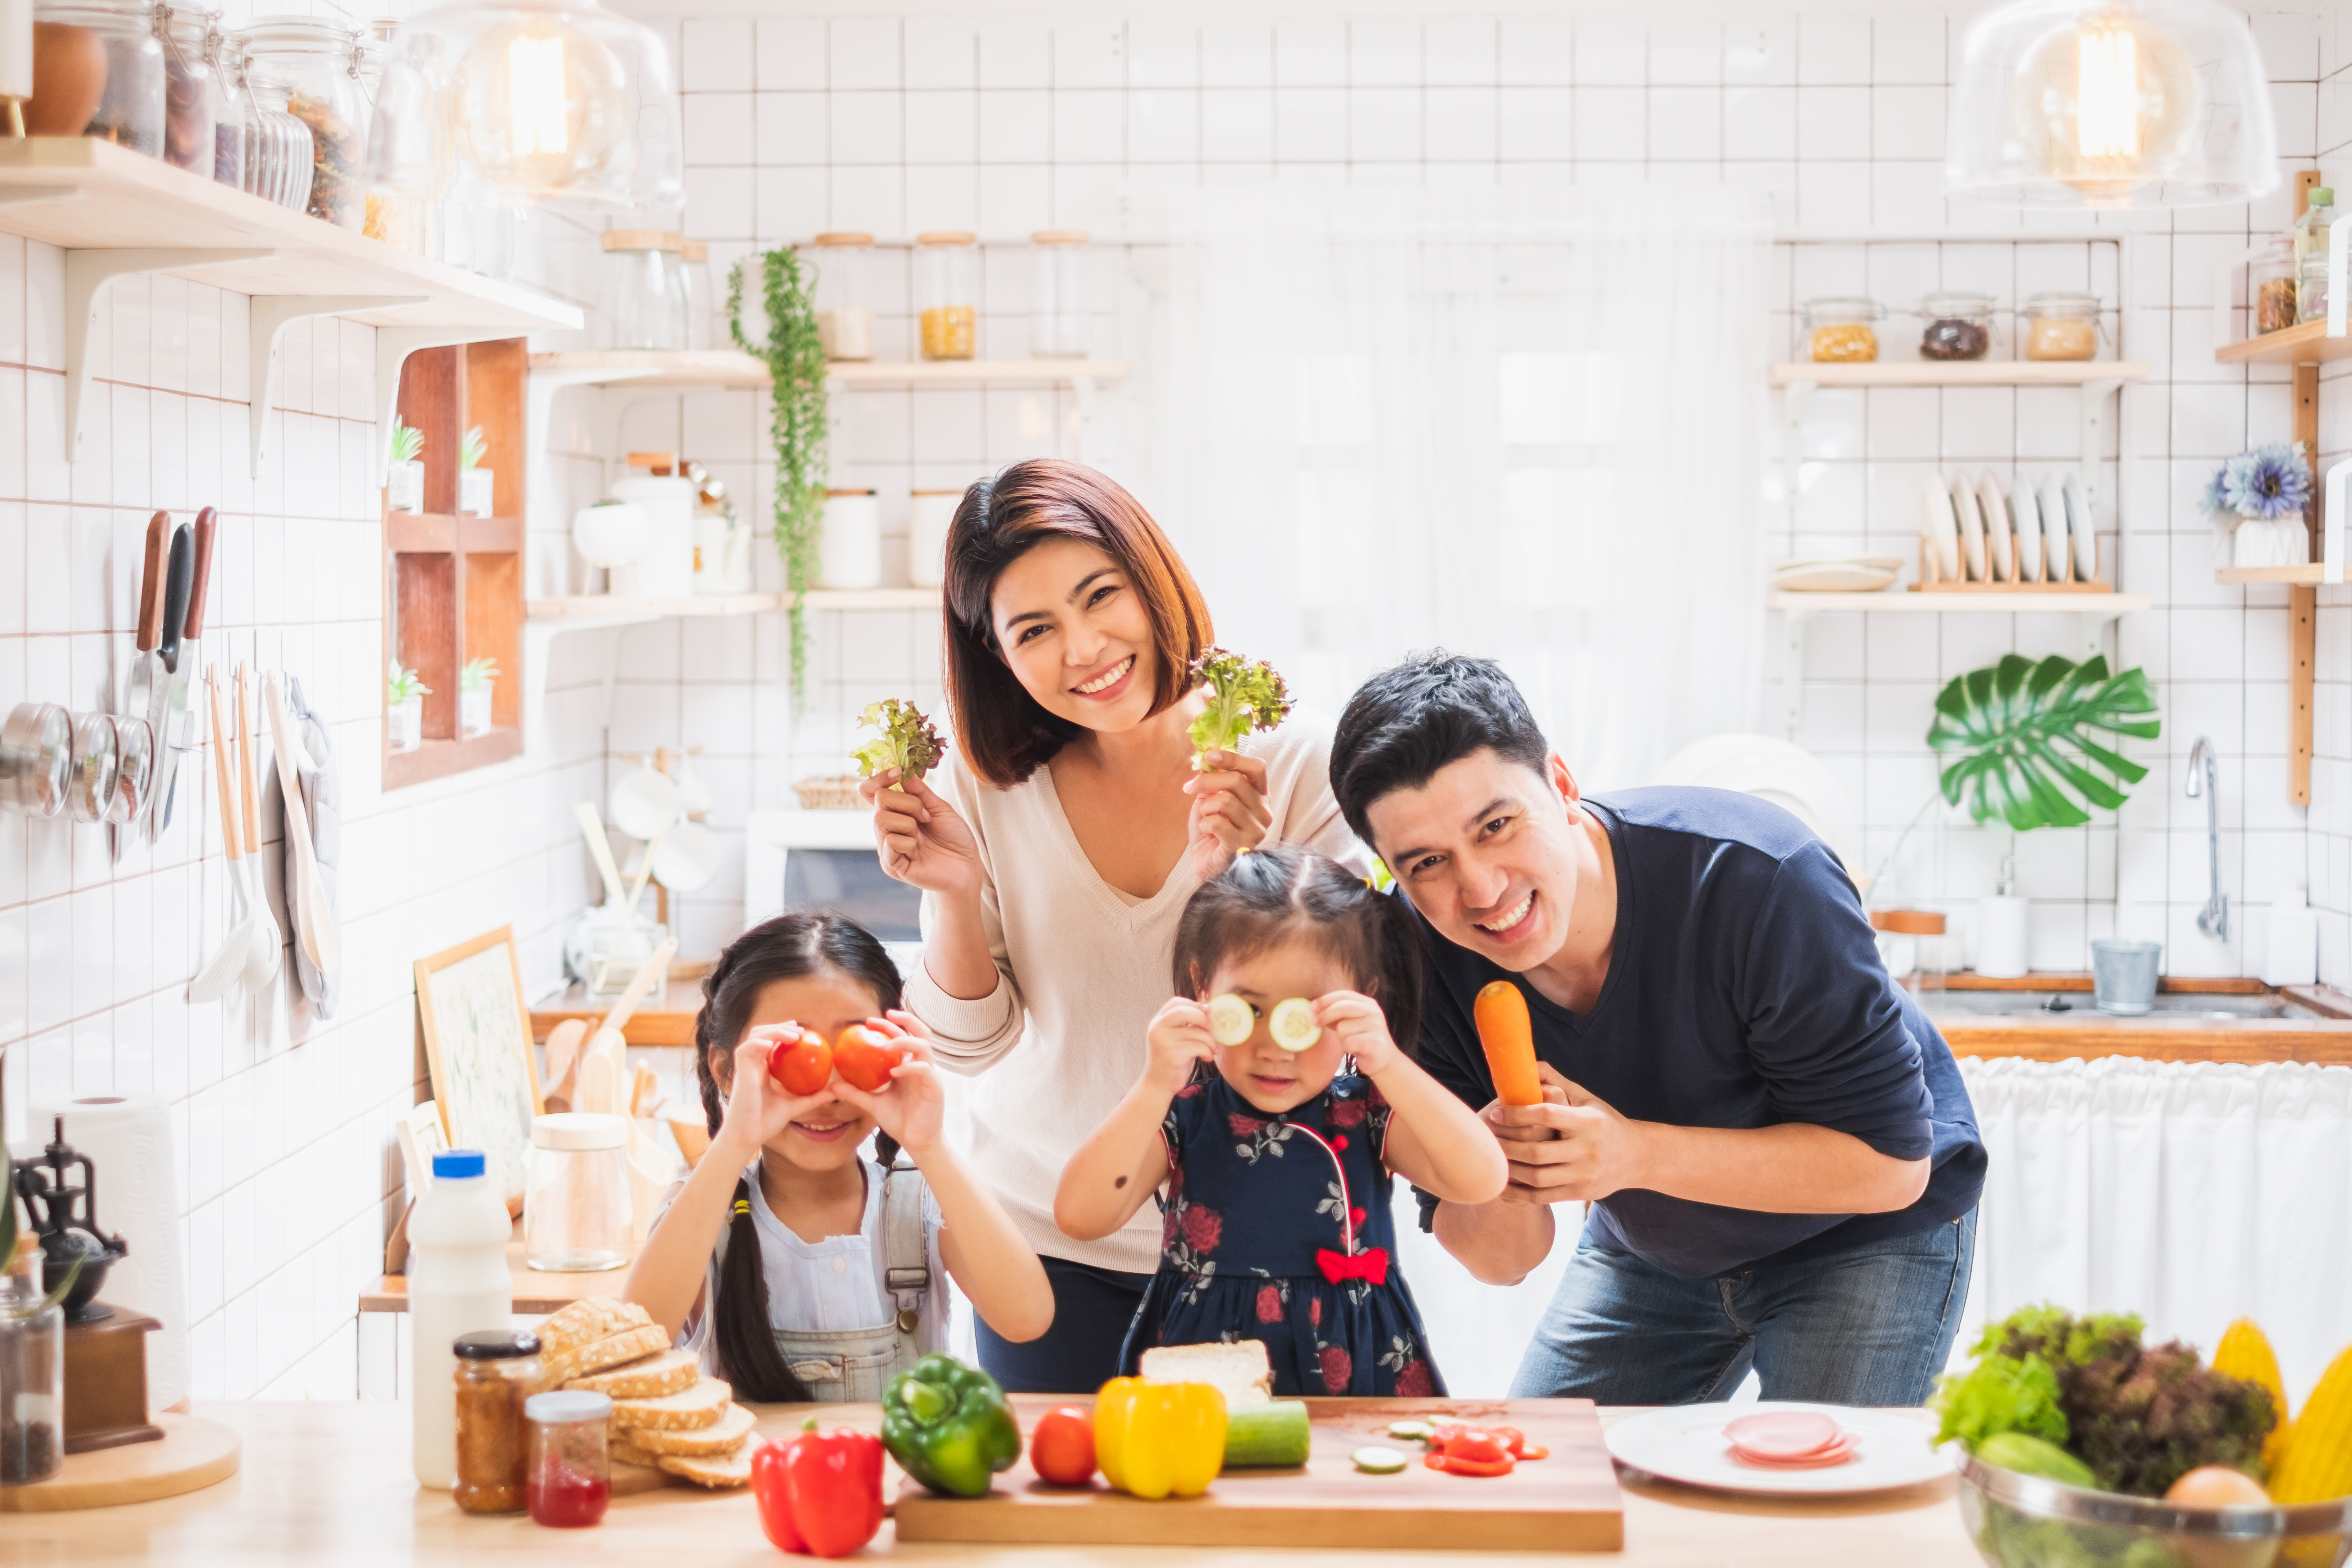 En familia es importante aprender una elección saludable de alimentos y fomentar hábitos que les mantengan sanos.  (Foto Prensa Libre: Shutterstock)